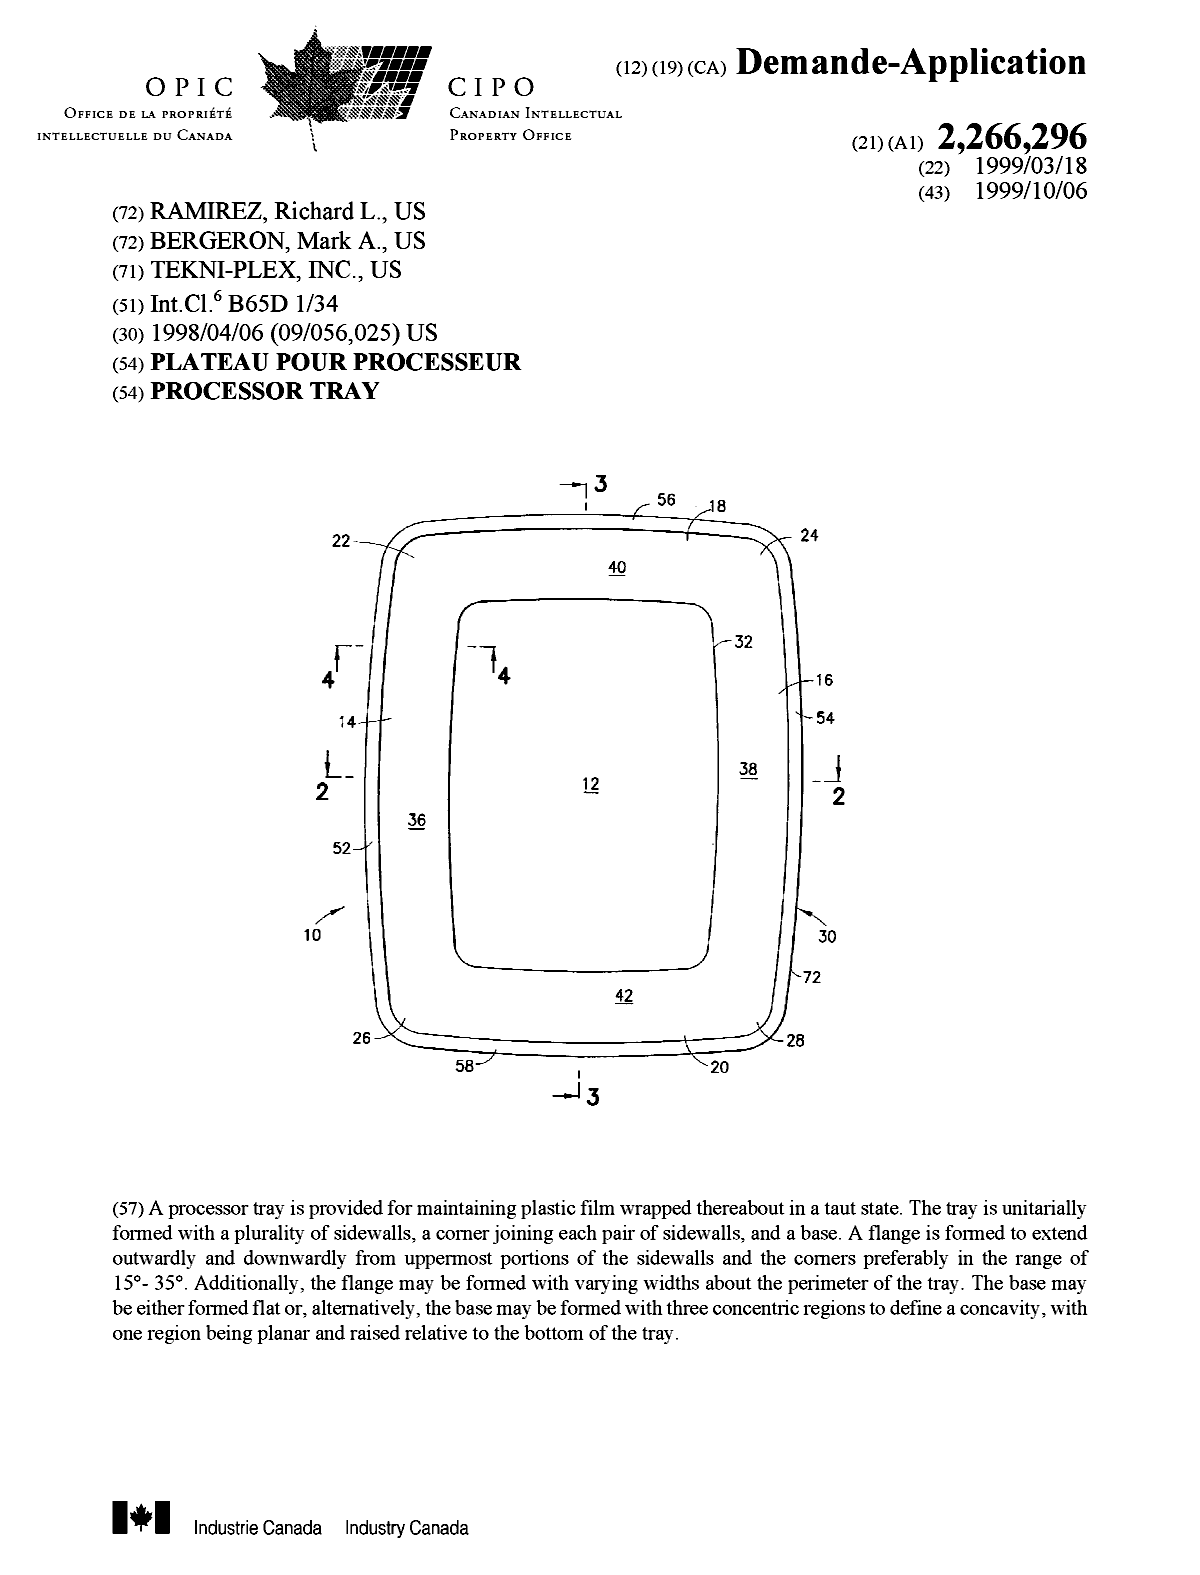 Document de brevet canadien 2266296. Page couverture 19990929. Image 1 de 1